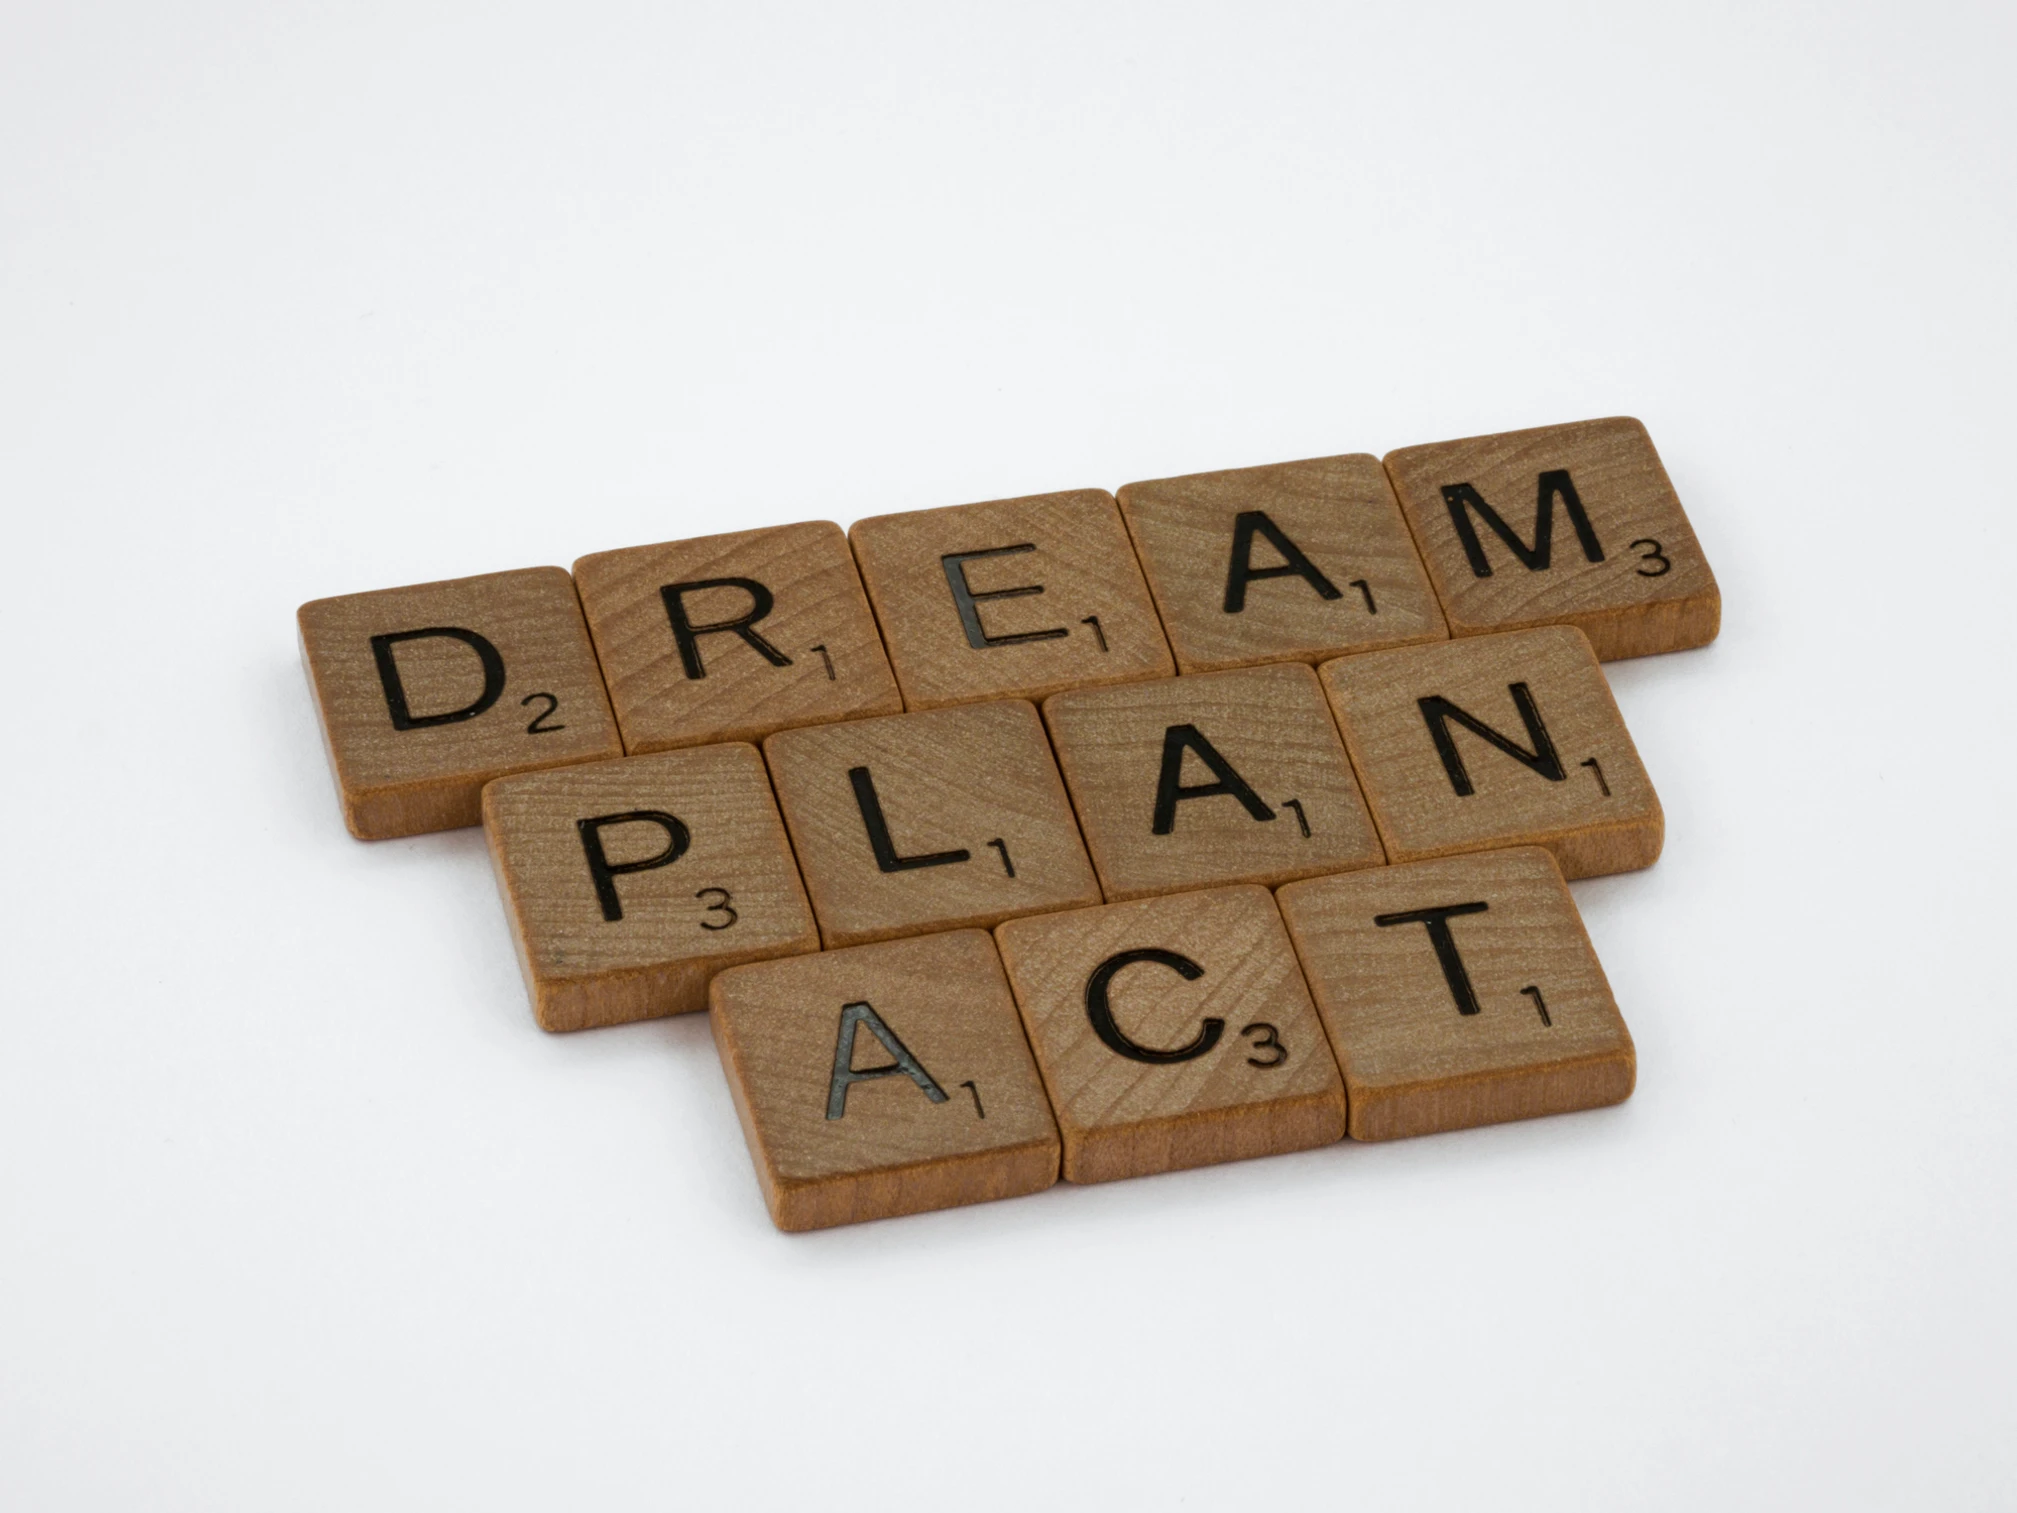 Lettres de scrabble formant les mots "Dream", "Plan" et "Act".